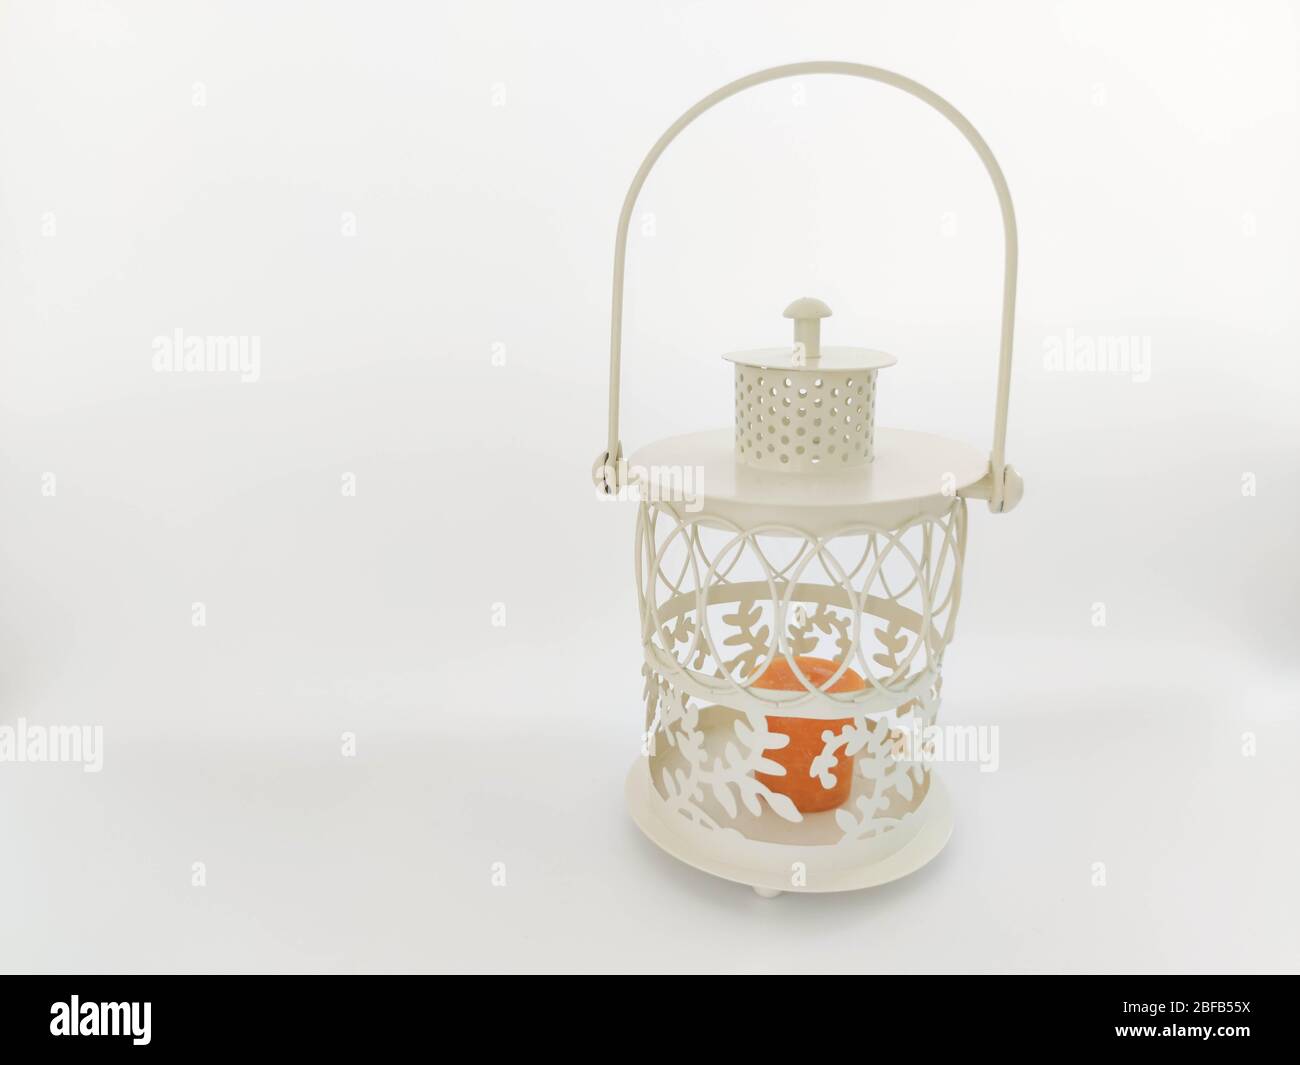 Lanterne vintage avec bougie orange sur fond blanc. Concept - célébration de vacances Ramadan kareem. Photo libre de droits Banque D'Images